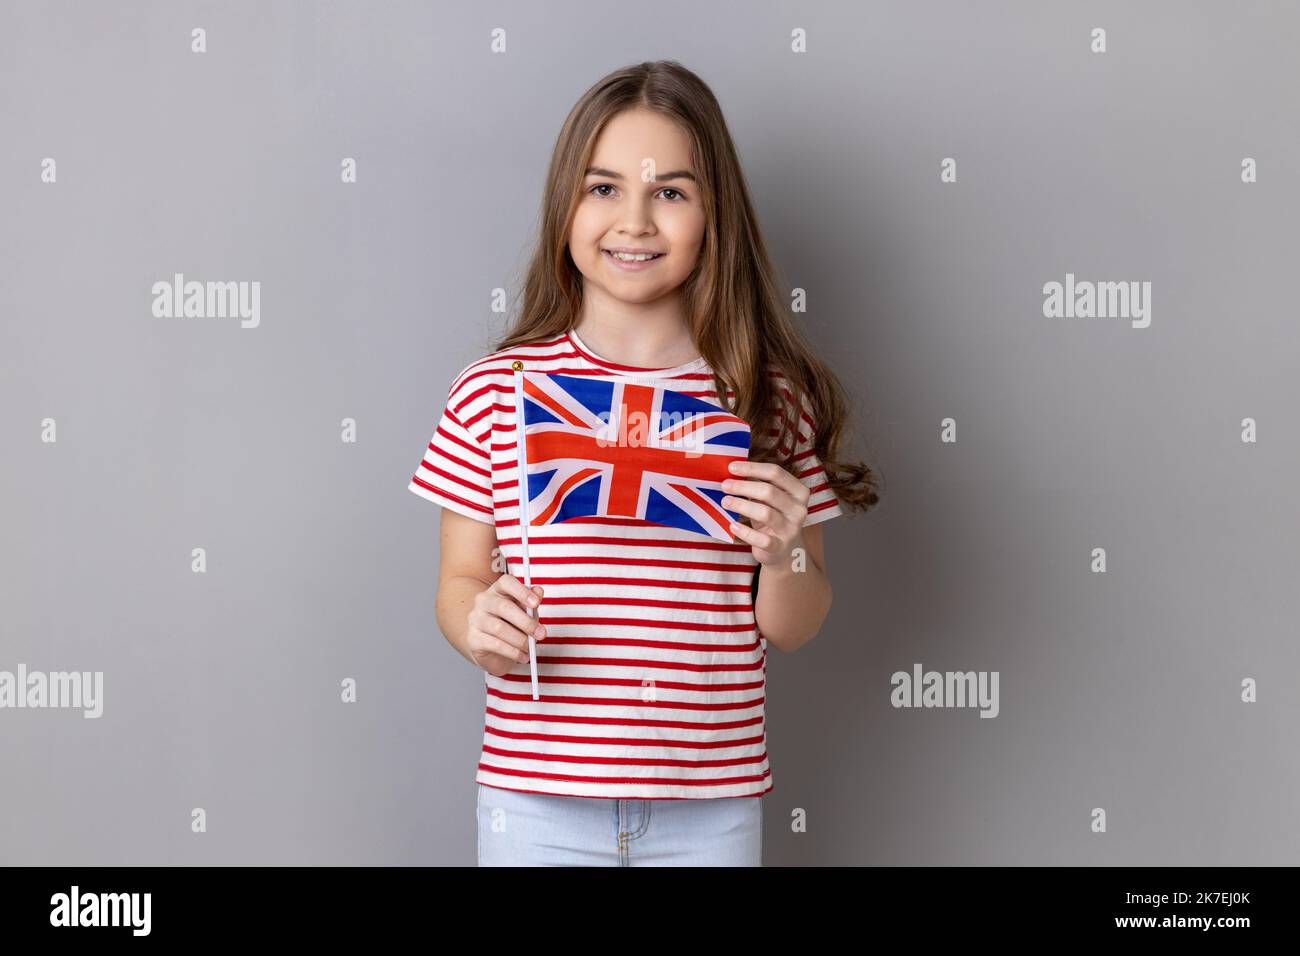 Bandiera britannica. Ritratto di affascinante bambina sorridente che indossa T-shirt a righe con bandiera del Regno Unito guardando la fotocamera con espressione positiva. Studio in interni isolato su sfondo grigio Foto Stock